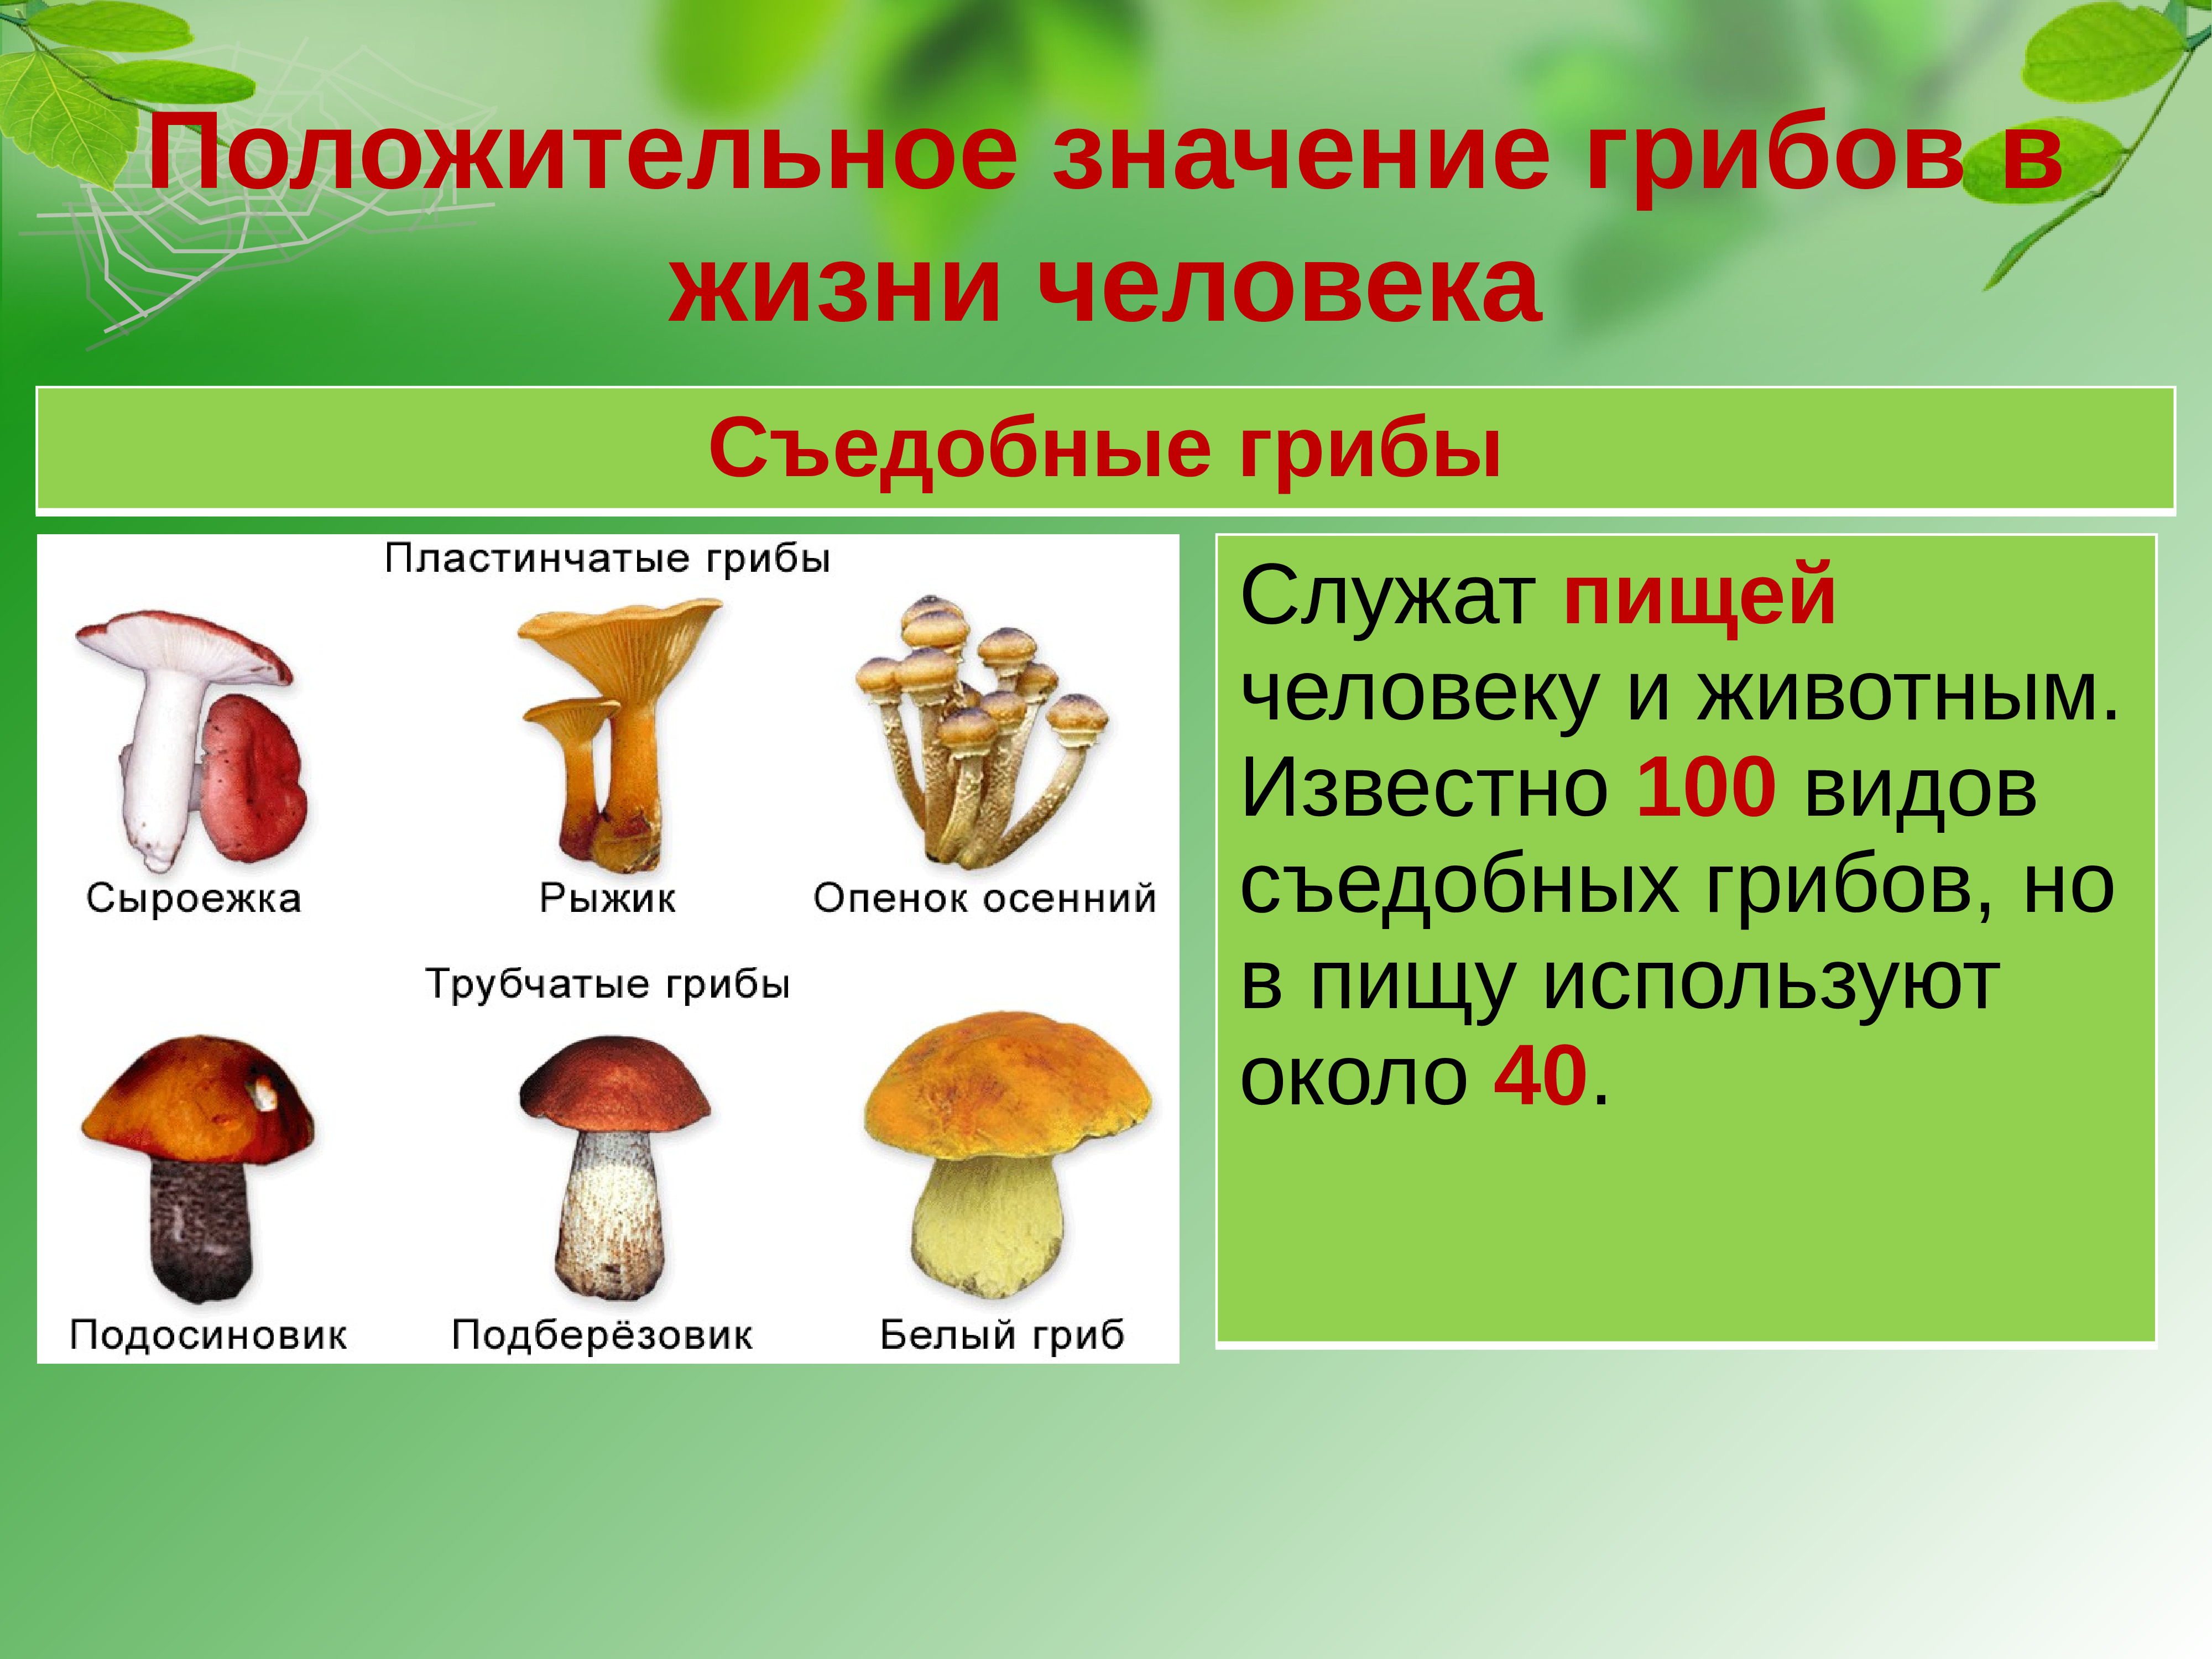 Положительное значение грибов